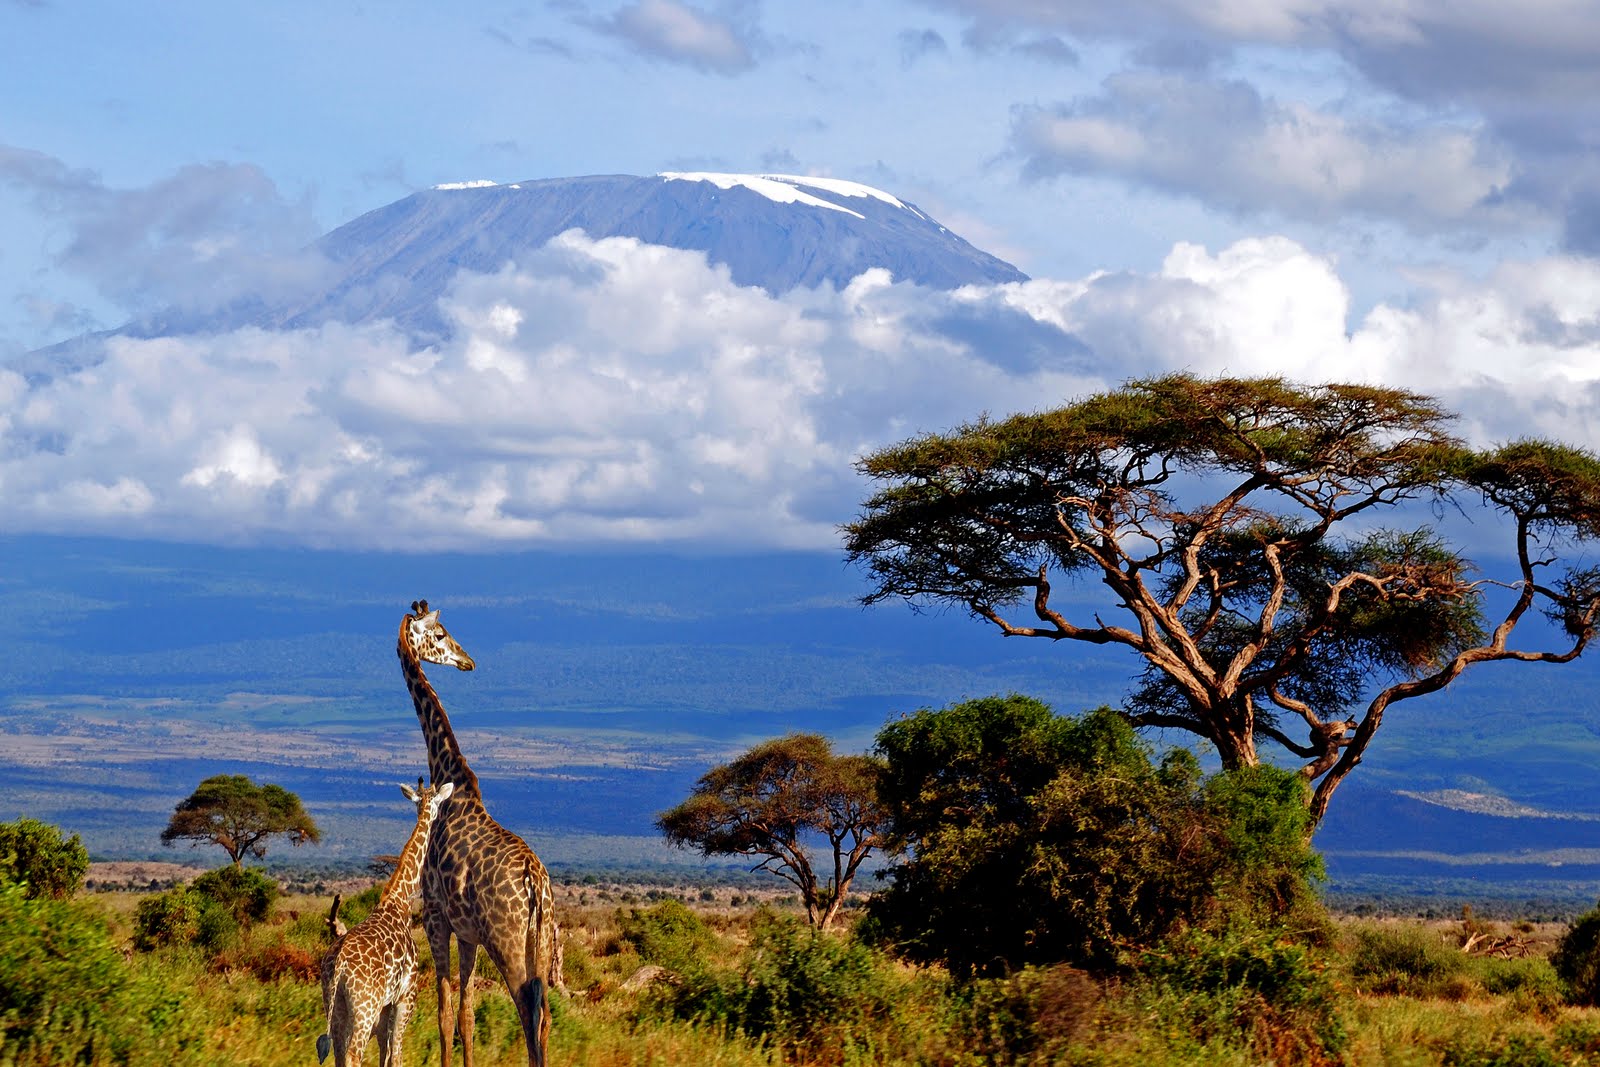 supervivientes al cancer de mama subiran el kilimanjaro